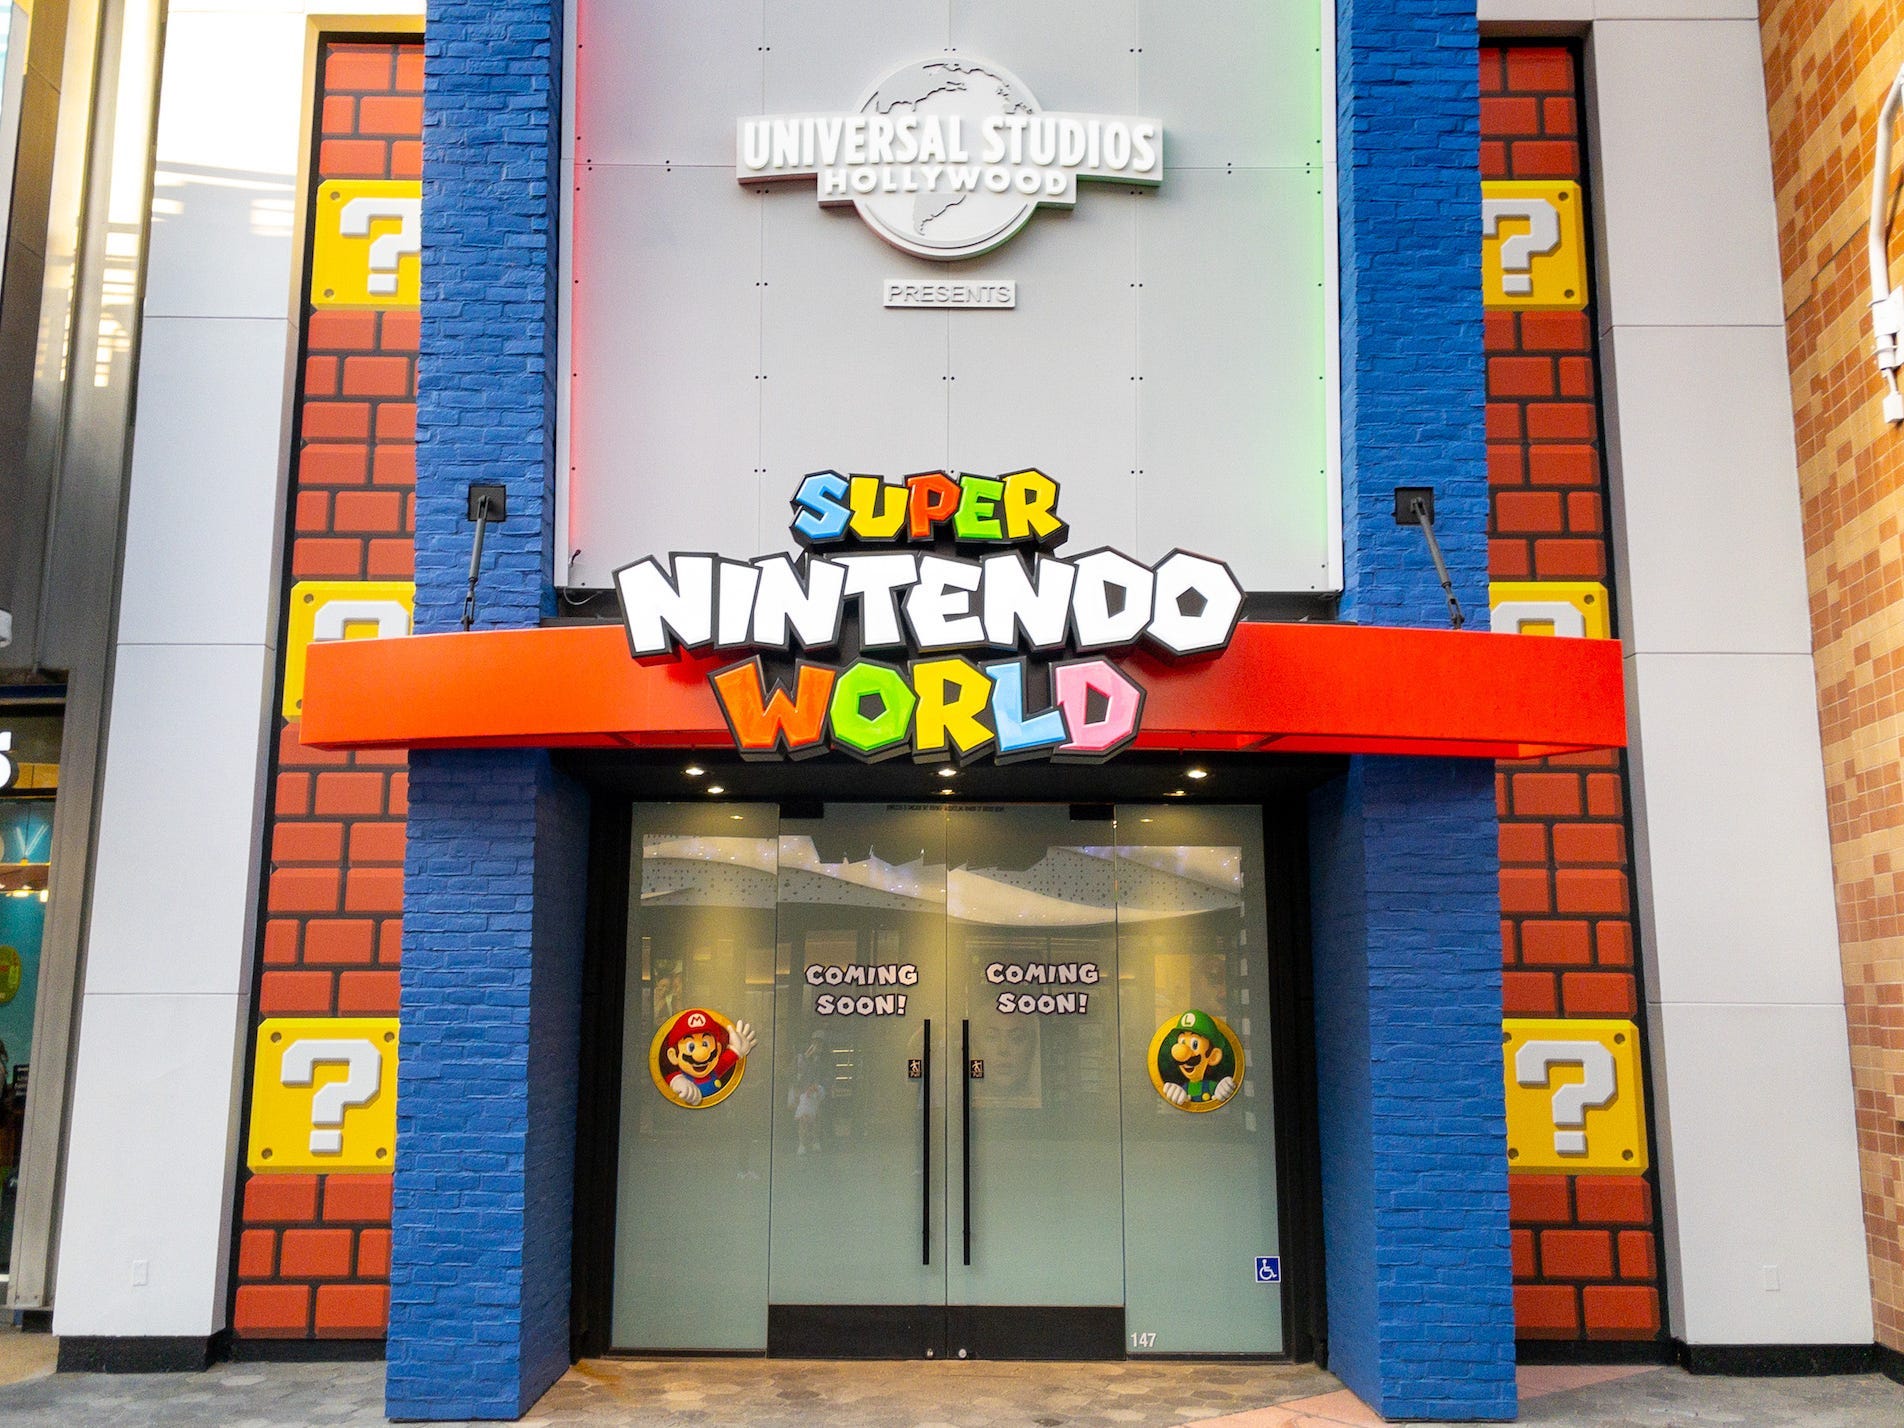 Die Universal Studios Hollywood werben am 26. September 2022 auf dem Universal CityWalk in Universal City, Kalifornien, für ihre bevorstehende Erweiterung des Super Nintendo World-Themenparks.